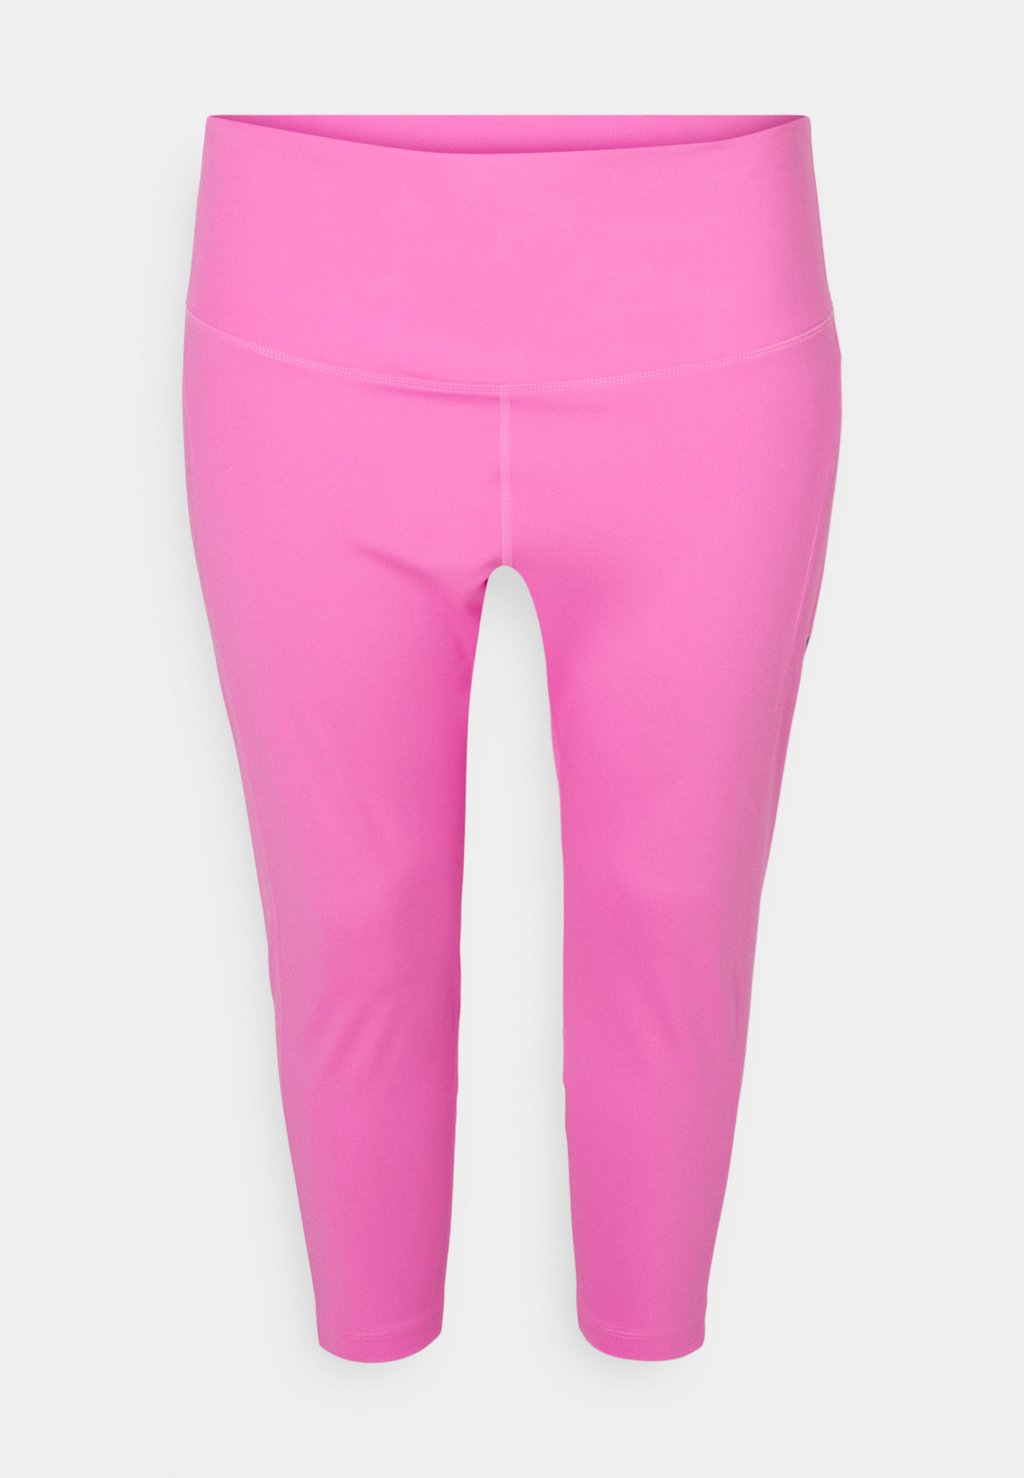 Леггинсы Nike, цвет playful pink/(hyper royal) royal pink